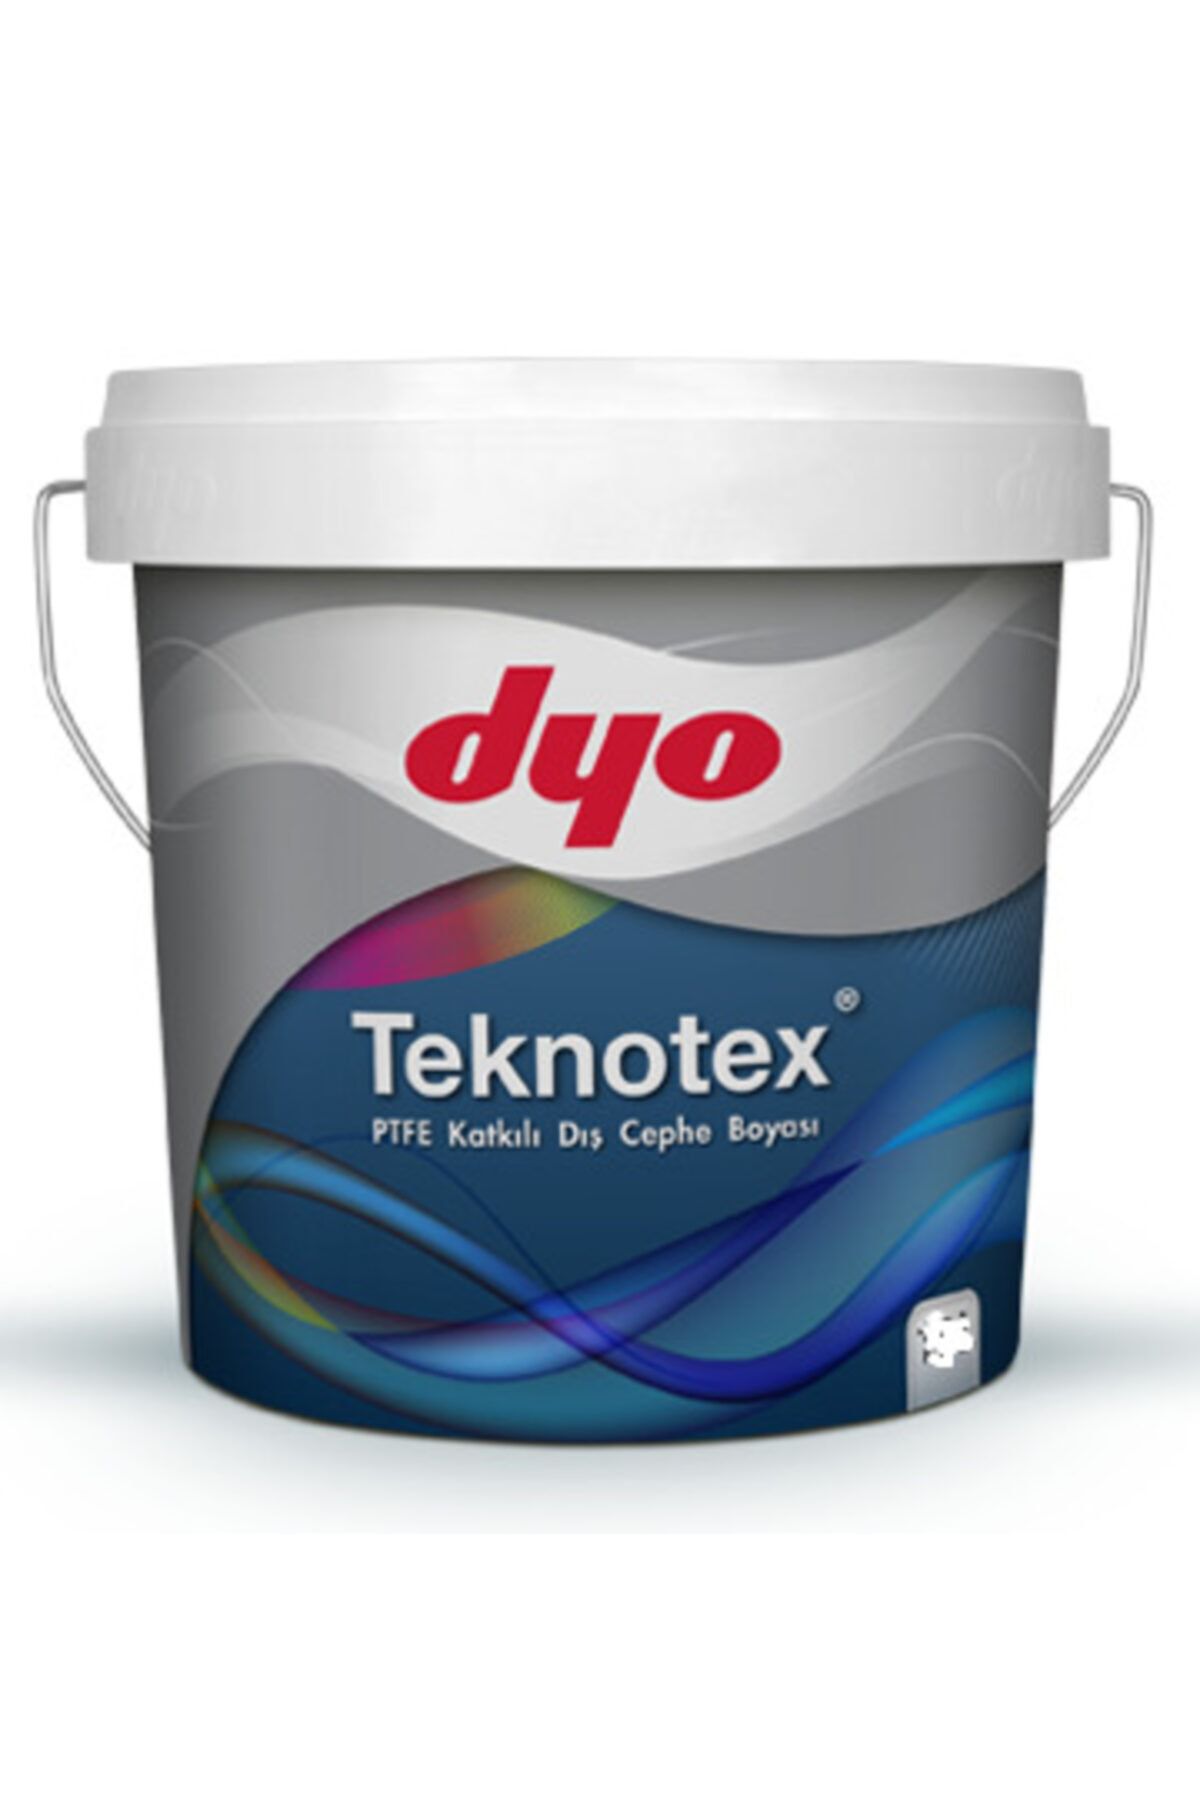 Dyo Teknotex Silikonlu Teflonlu Dış Cephe Boyası 2,5 lt (3,5 kg)